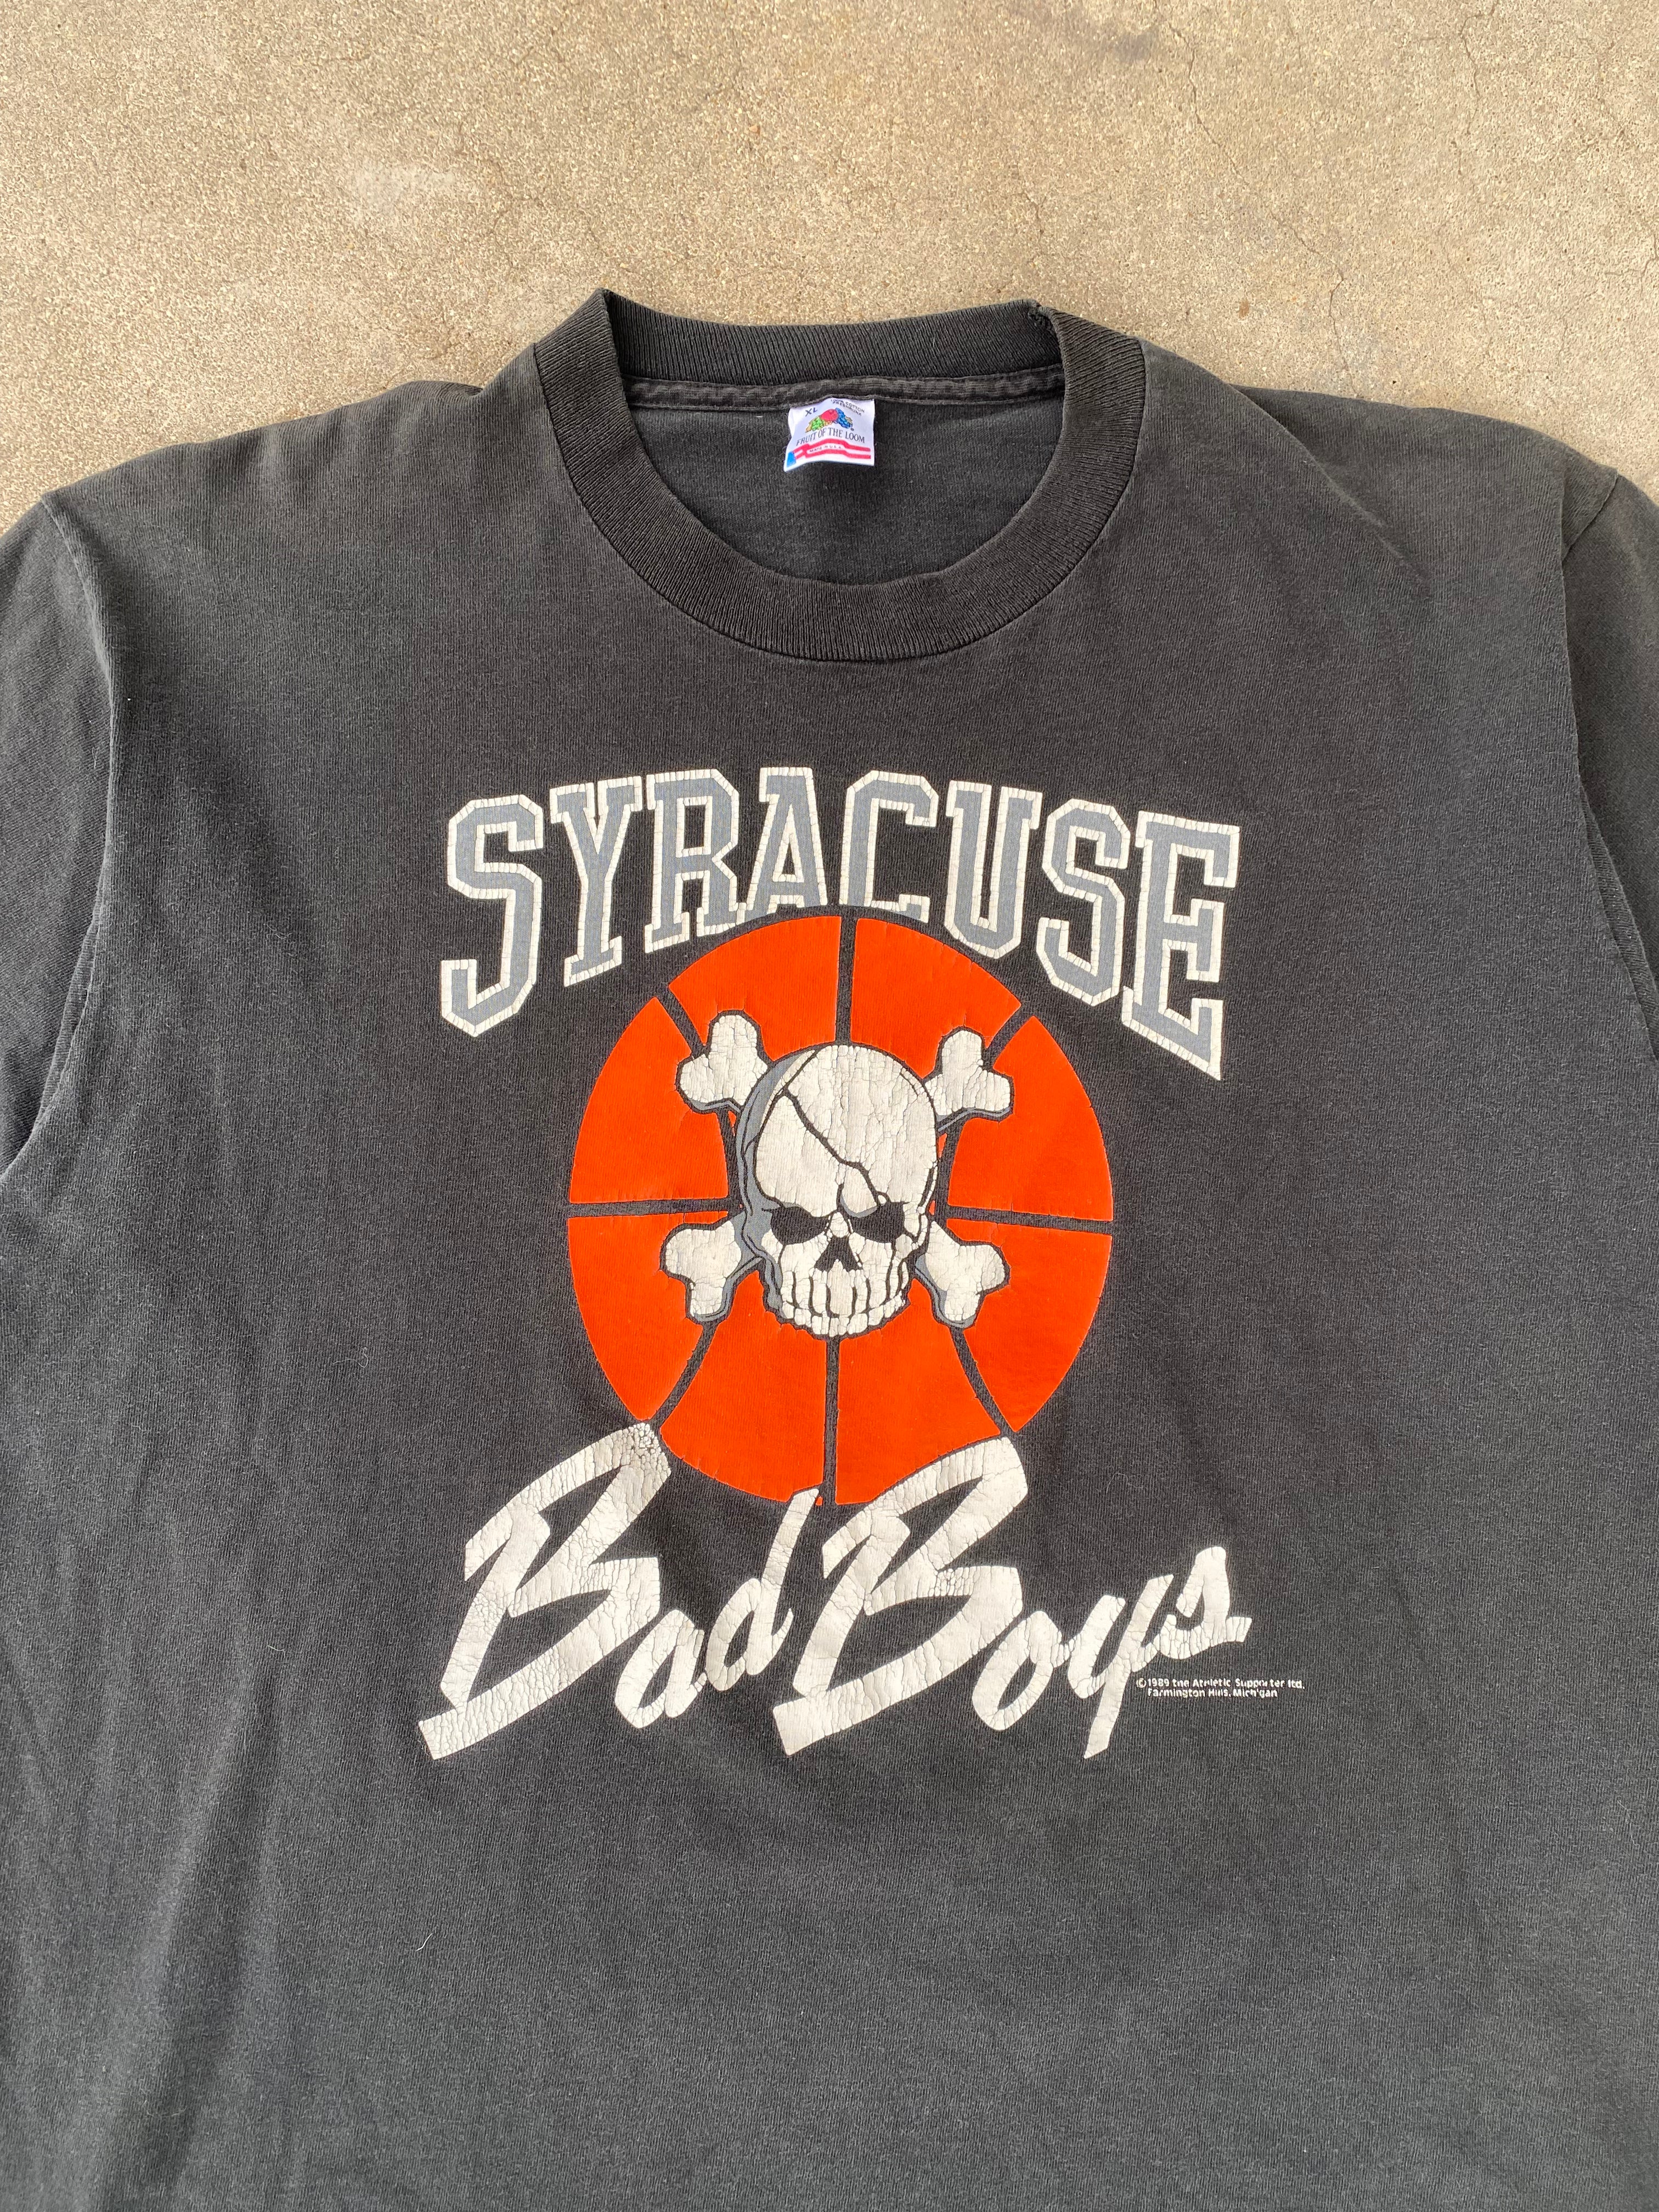 1989 Syracuse “Bad Boys” T-Shirt (XL)